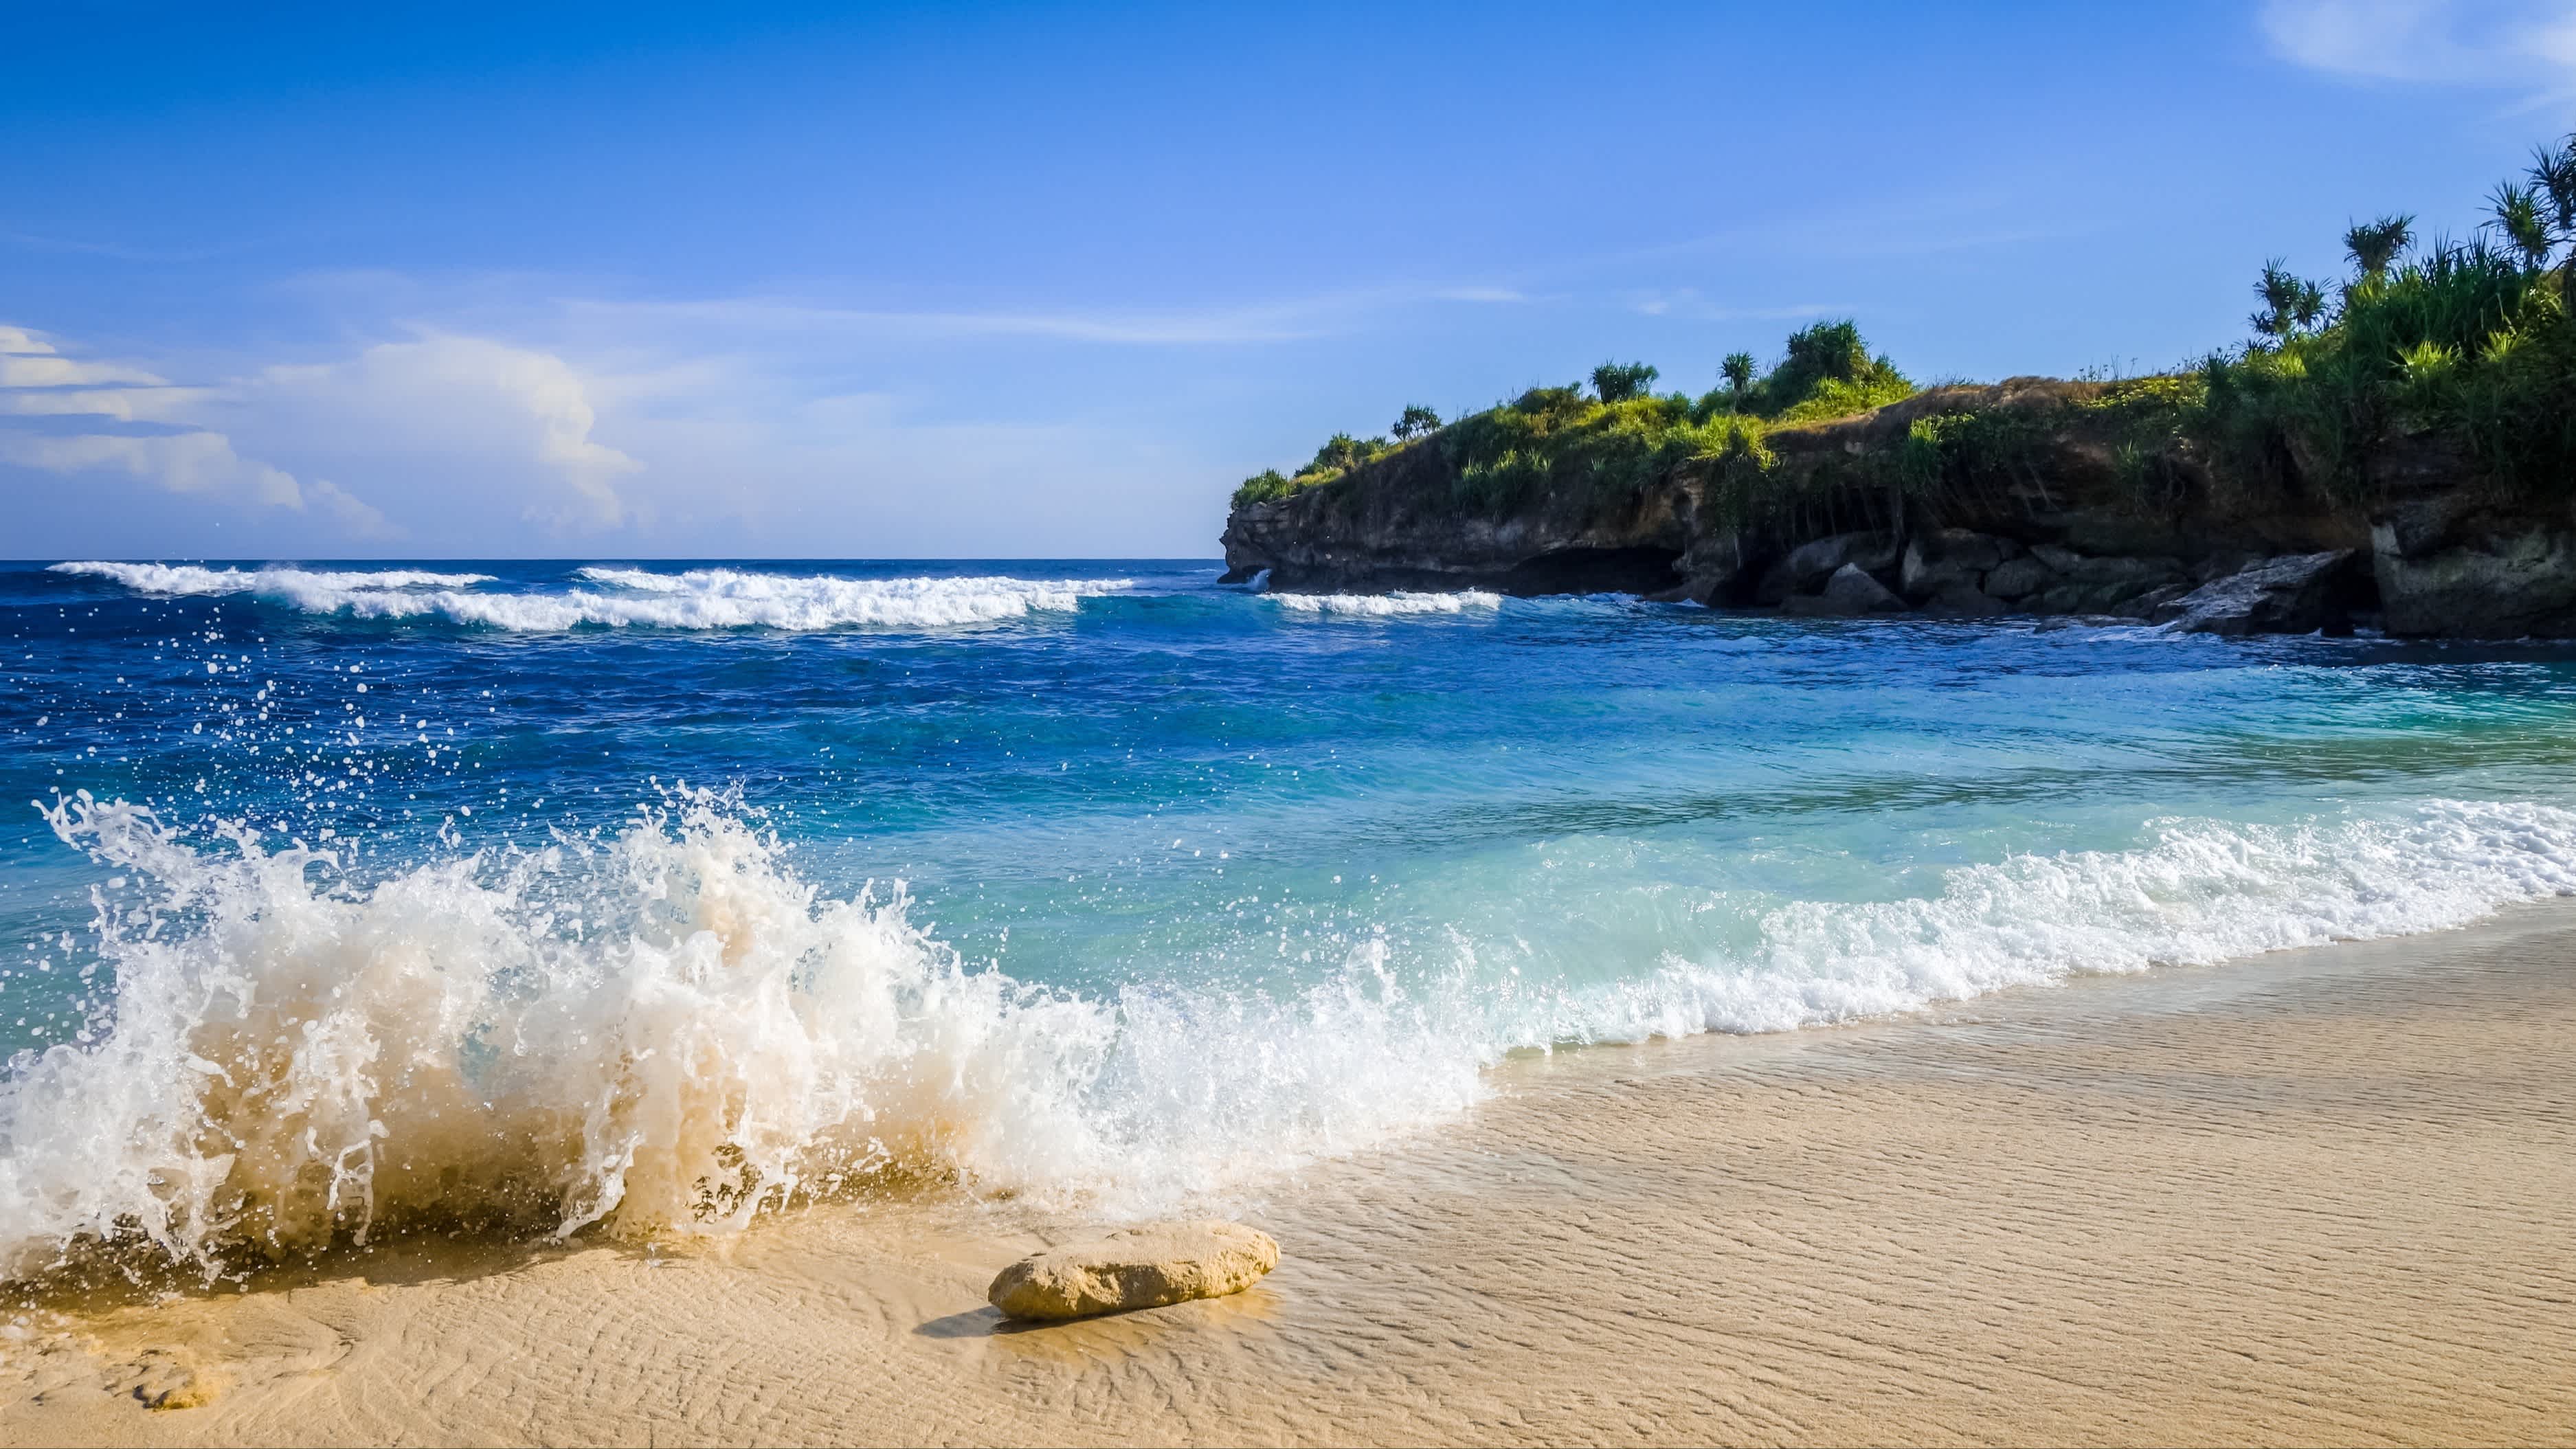 Aufnahme des Dream Beach auf Nusa Lembongan, Indonesien mit Wellen und grüner Küste im Bild.